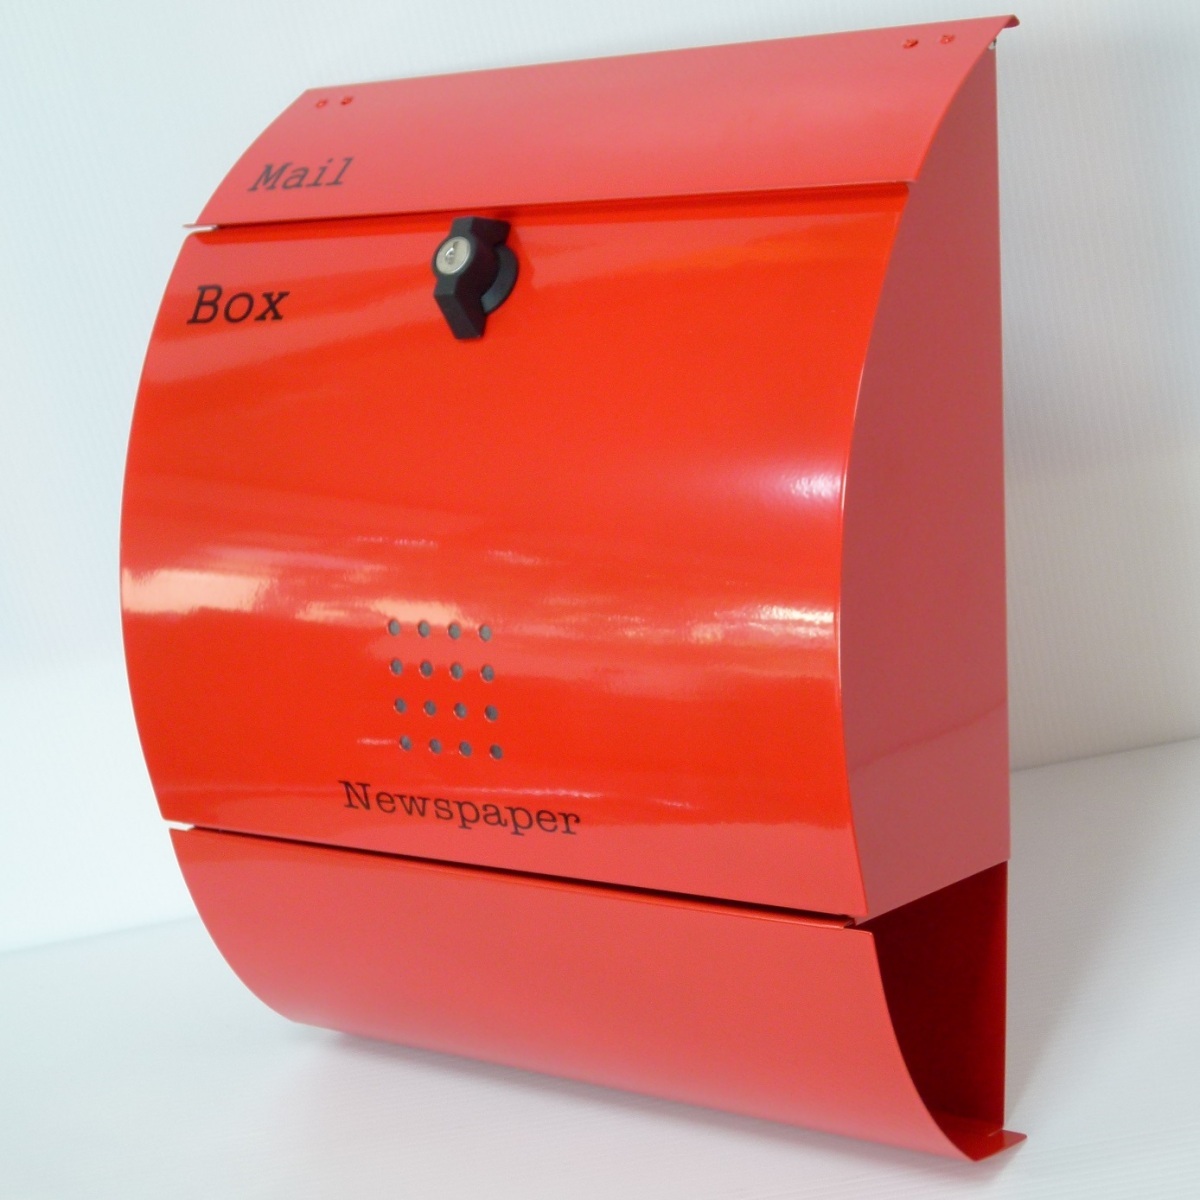 郵便ポスト郵便受けおしゃれかわいい人気北欧モダンデザイン大型メールボックス 壁掛けプレミアムステンレス レッド赤色ポストpm034